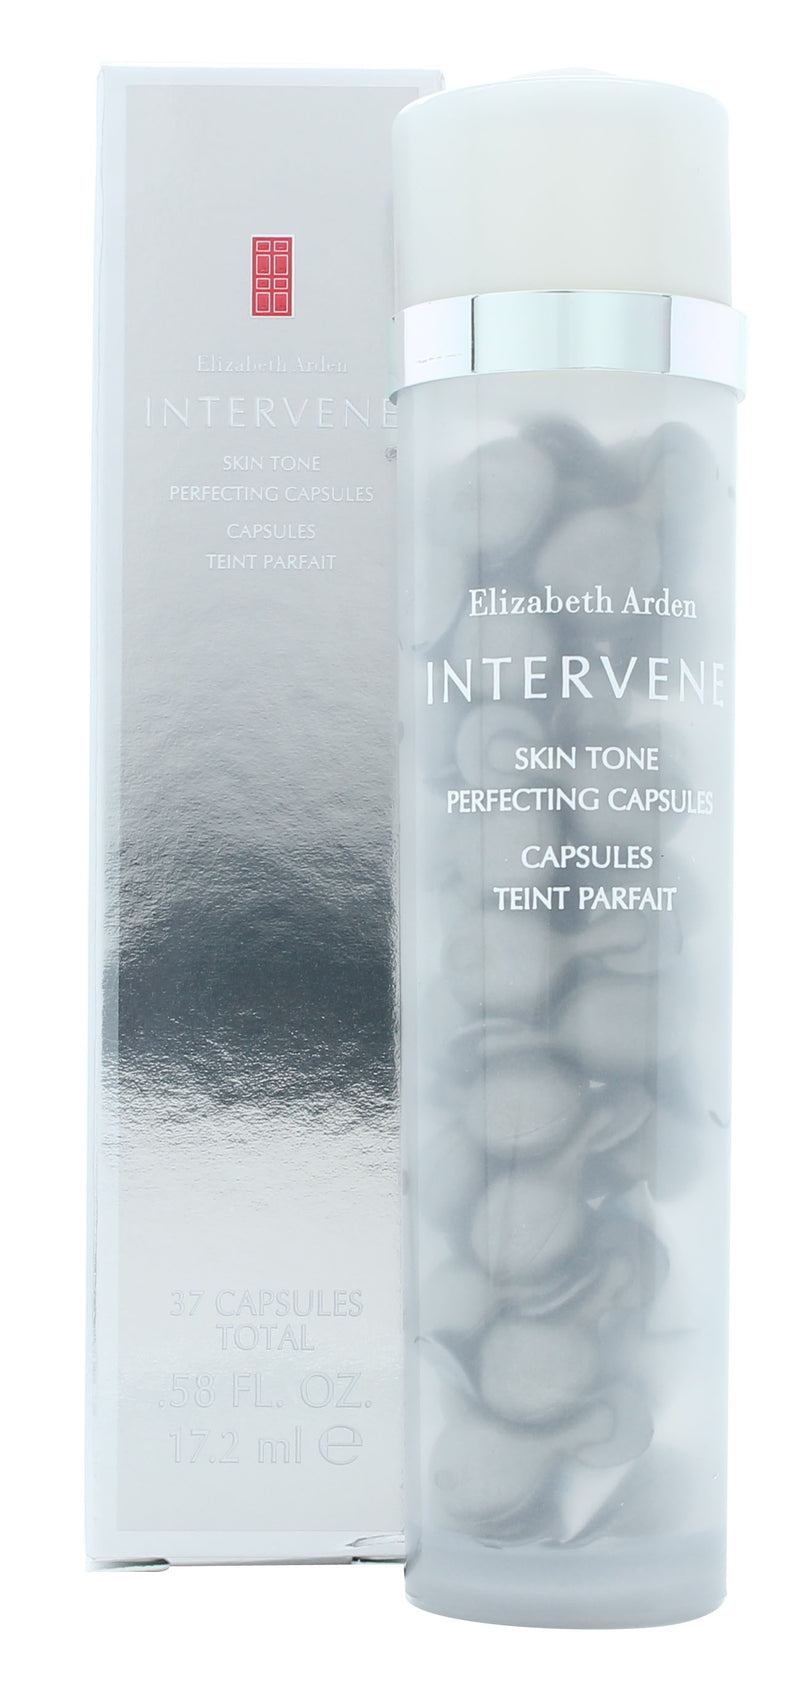 Elizabeth Arden Intervene Skin Tone 37 Caps 17.2ml